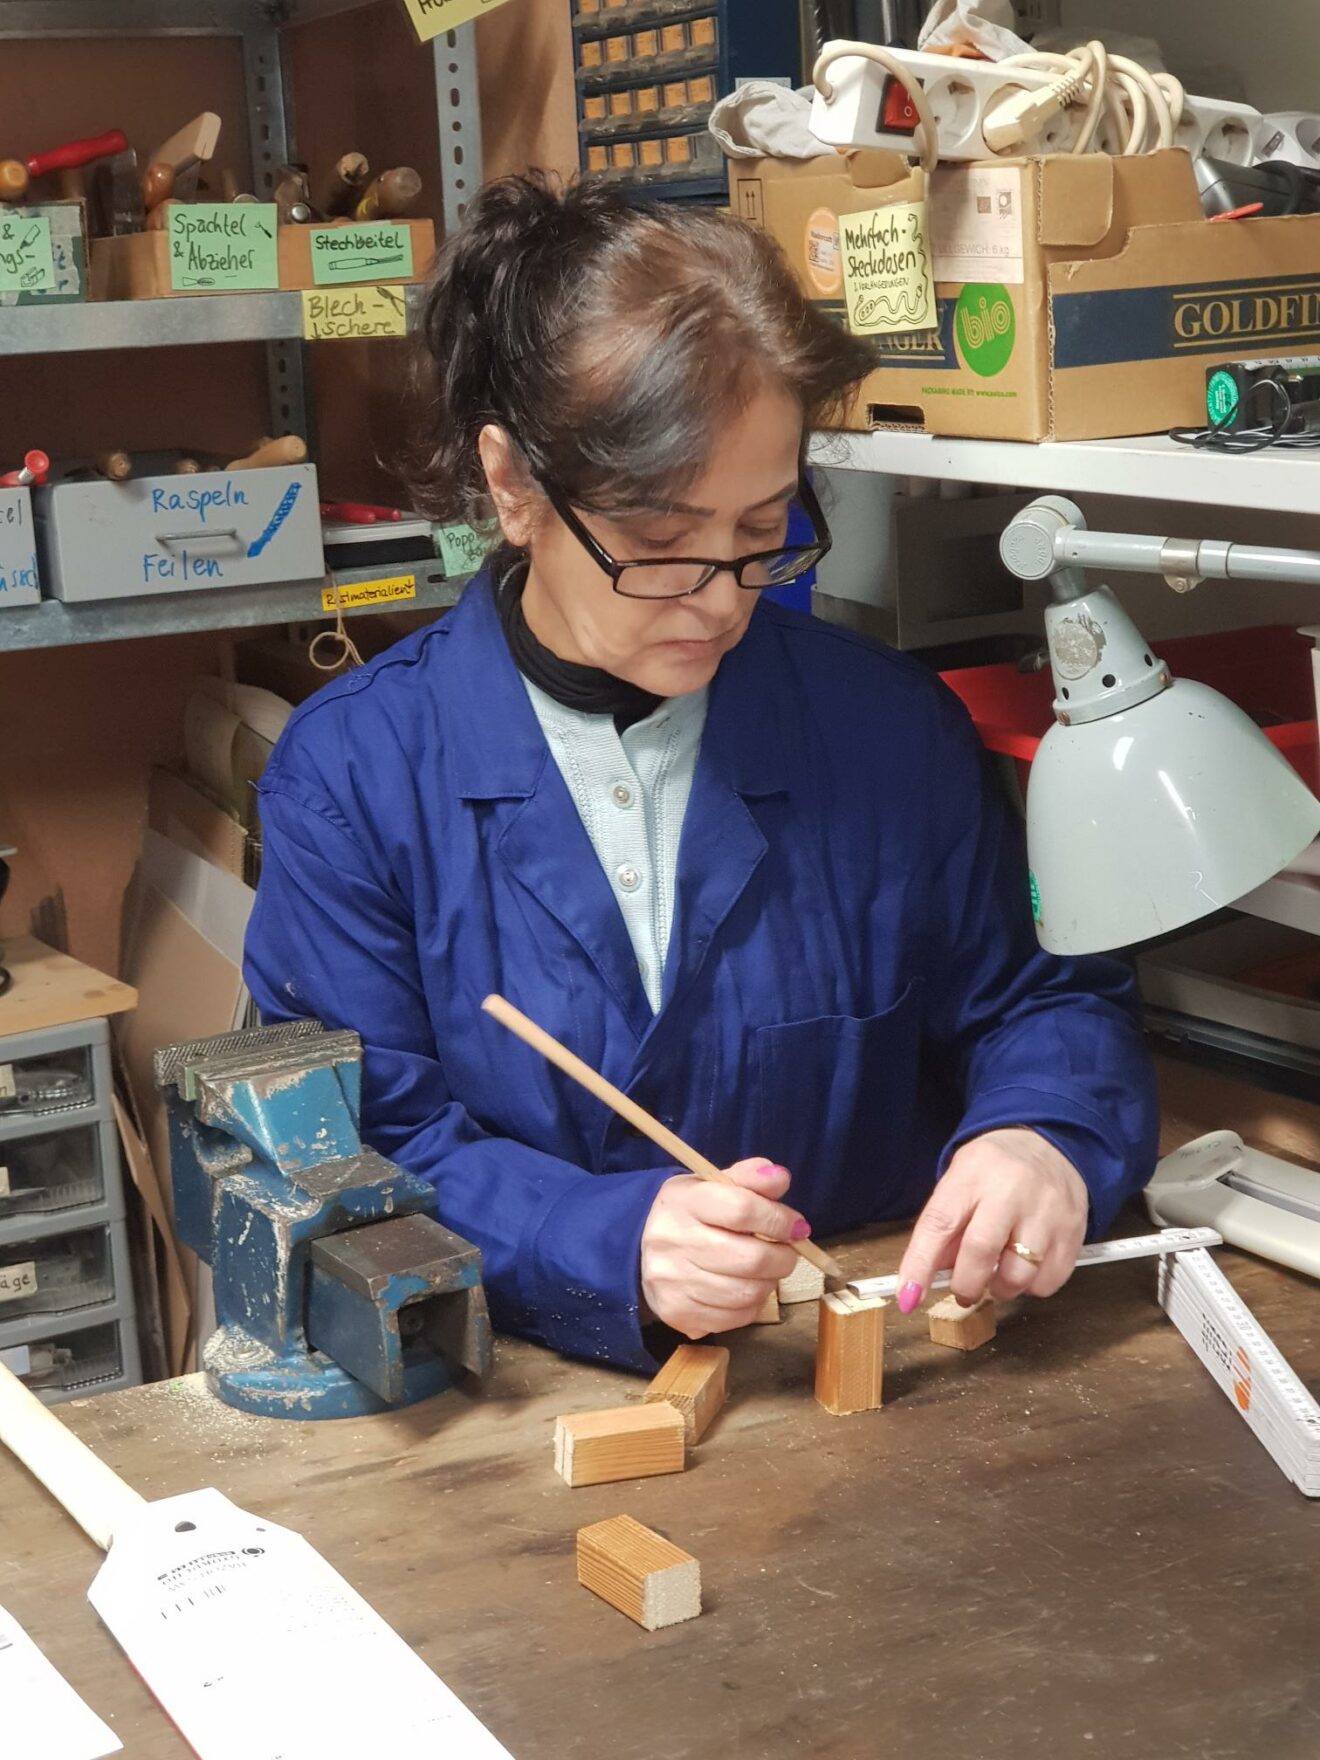 Eine Frau mit Brille steht an der Werkbank und zeichnet mit Bleistift auf ein Stück Holz. Sie trägt auch einen blauen Overall.